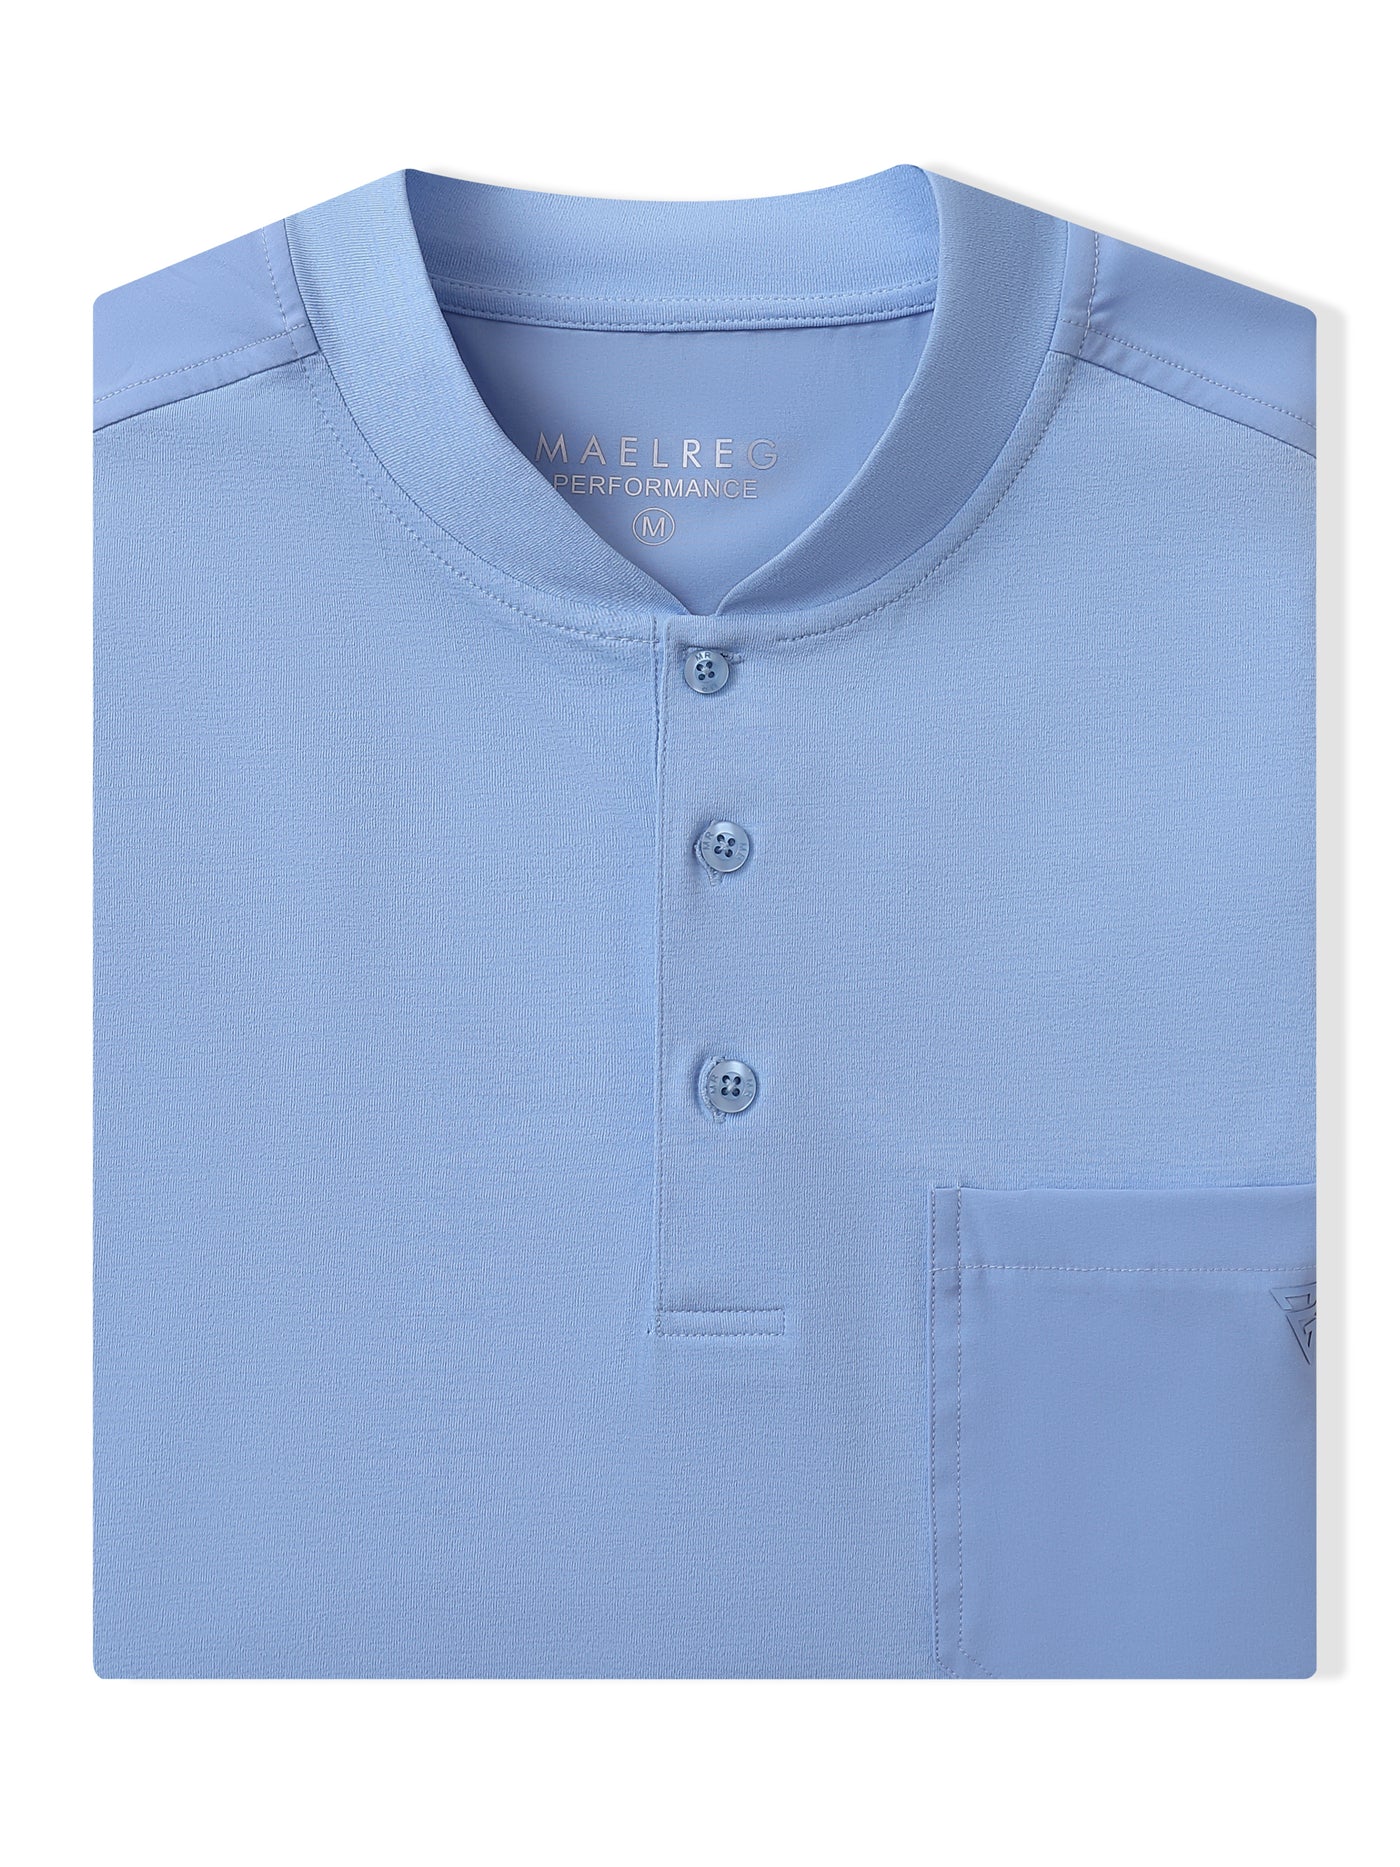 Men's Collarless Pocket Henley Golf Shirts-Light Blue